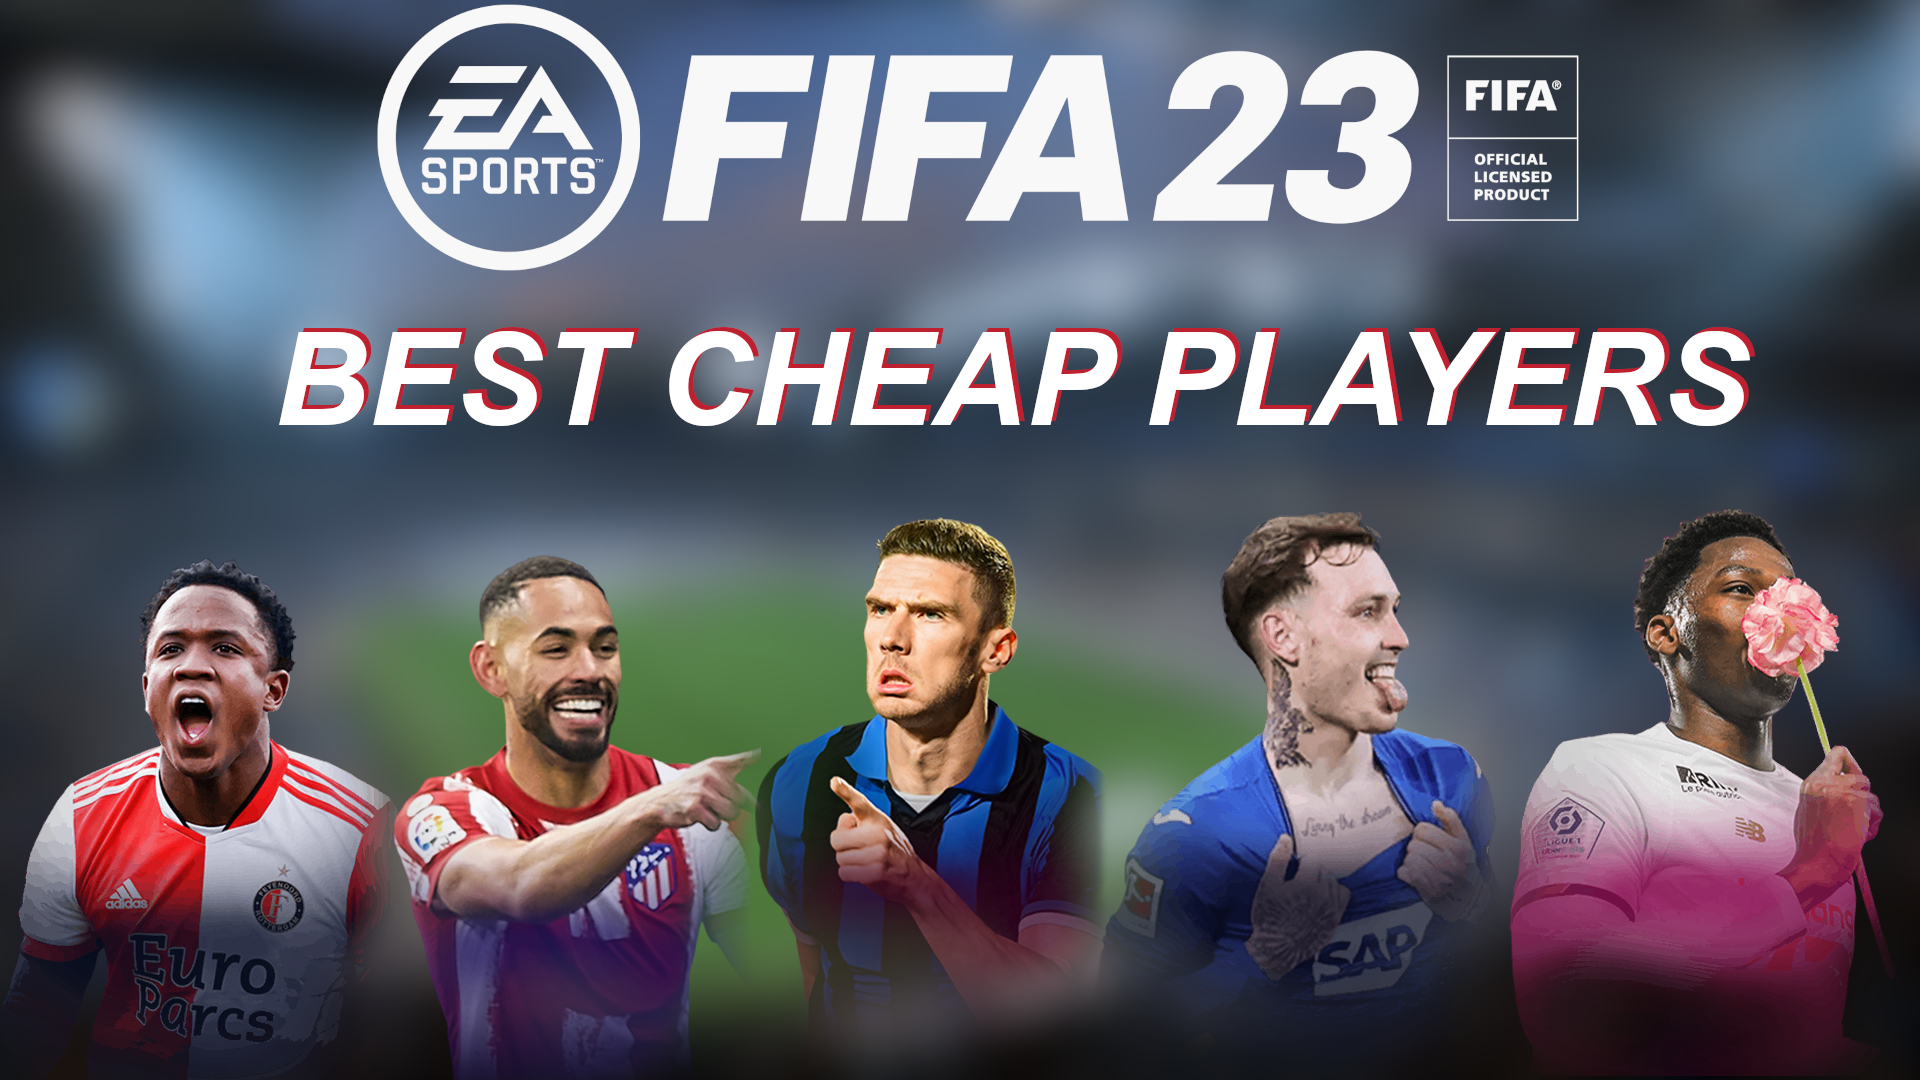 FIFA 23 Best cheap players list Richarlison, Griezmann & more in FUT